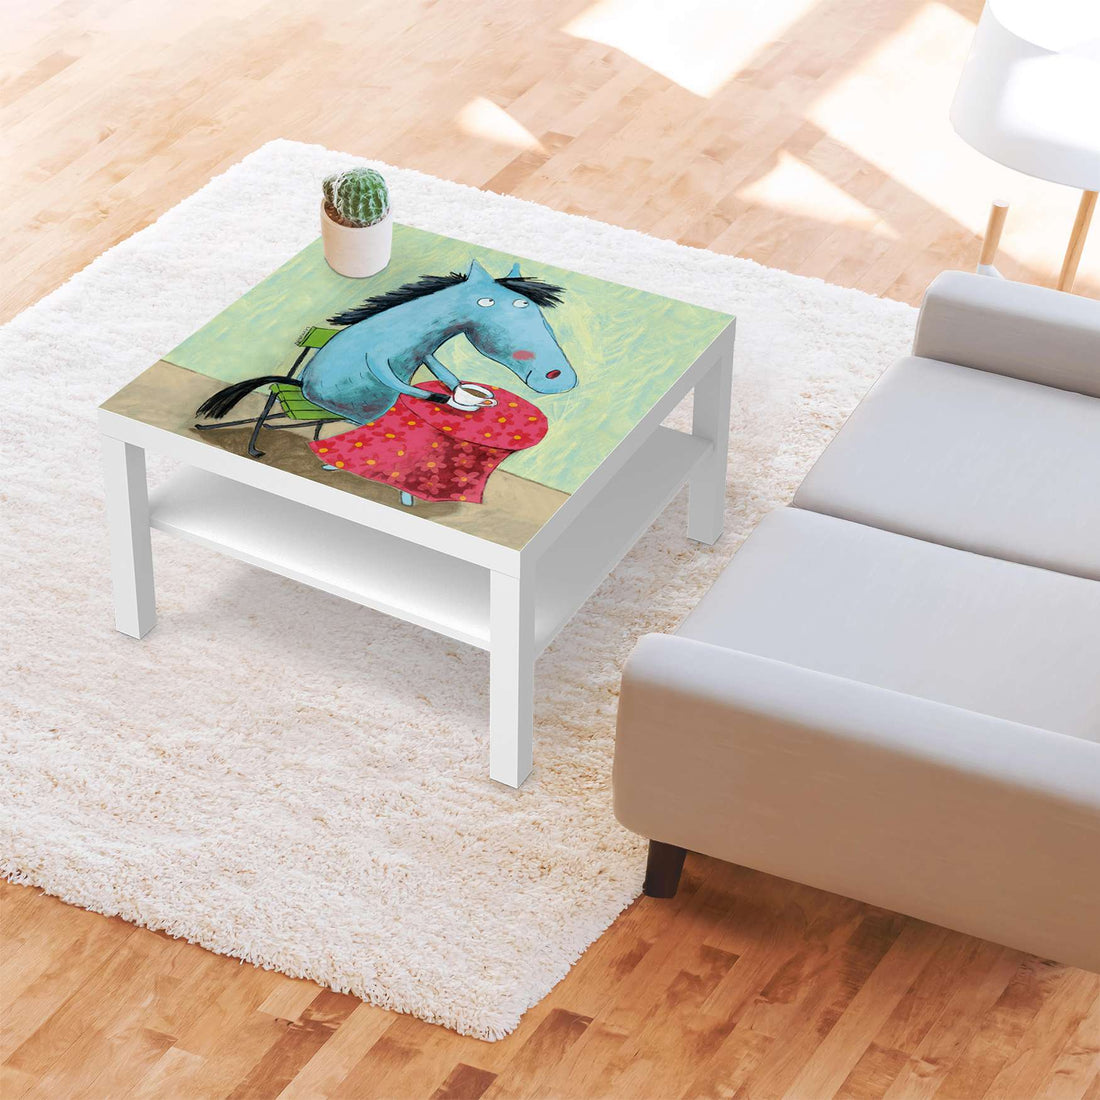 Selbstklebende Folie Pferd - IKEA Lack Tisch 78x78 cm - Kinderzimmer